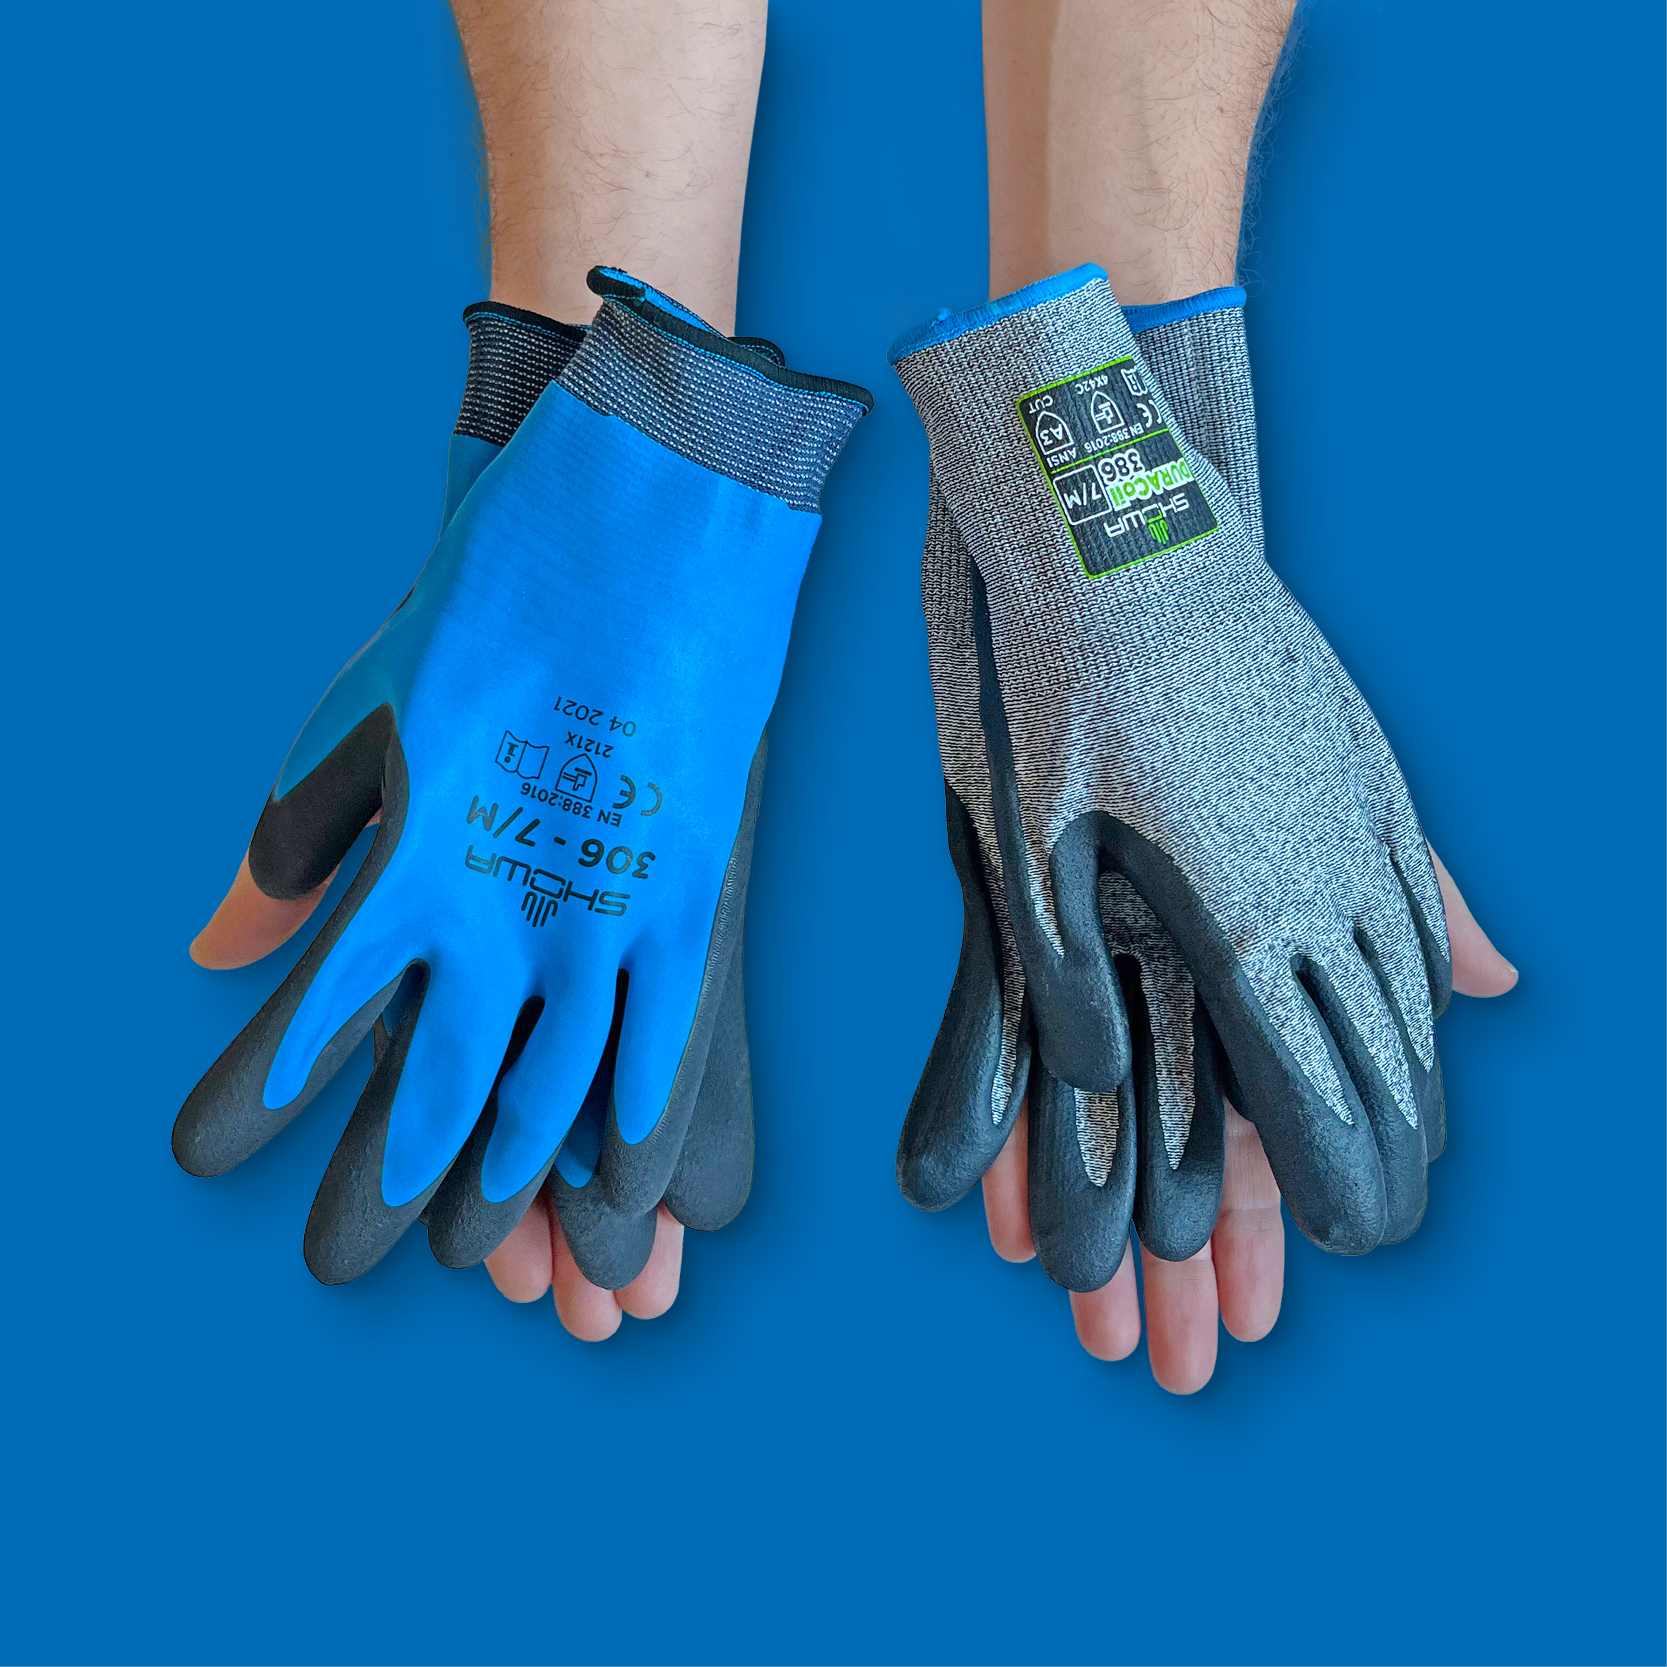 Twee handen die twee type handschoenen aanbieden